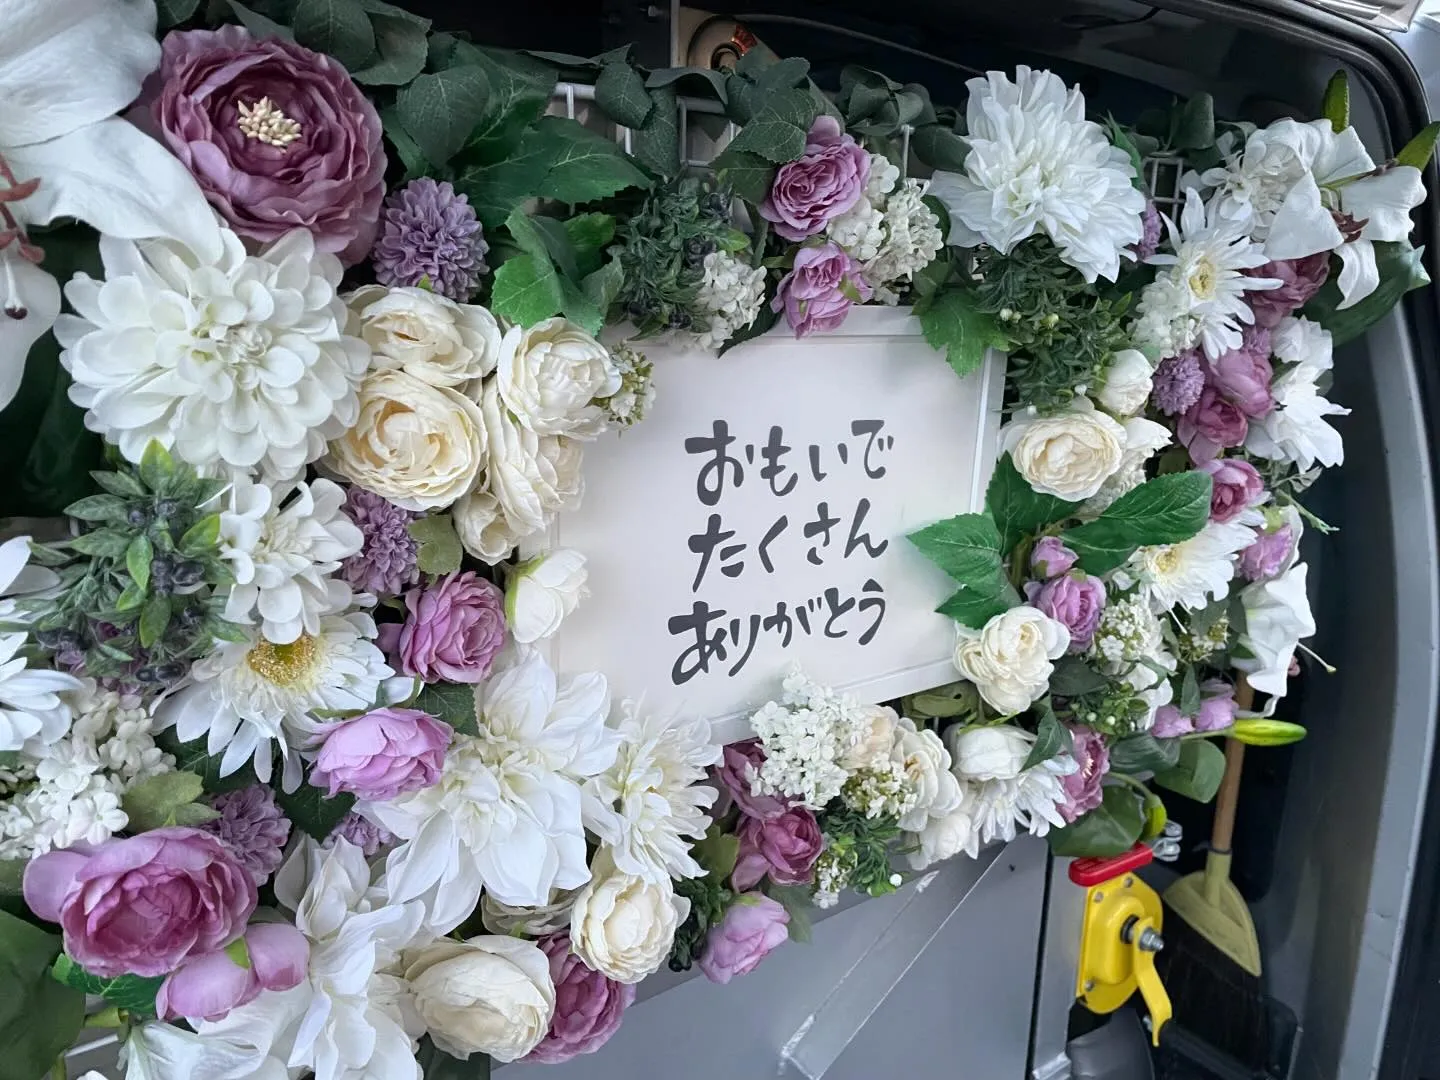 東京都昭島市にて小豆柴ちゃんのご火葬に伺いました。